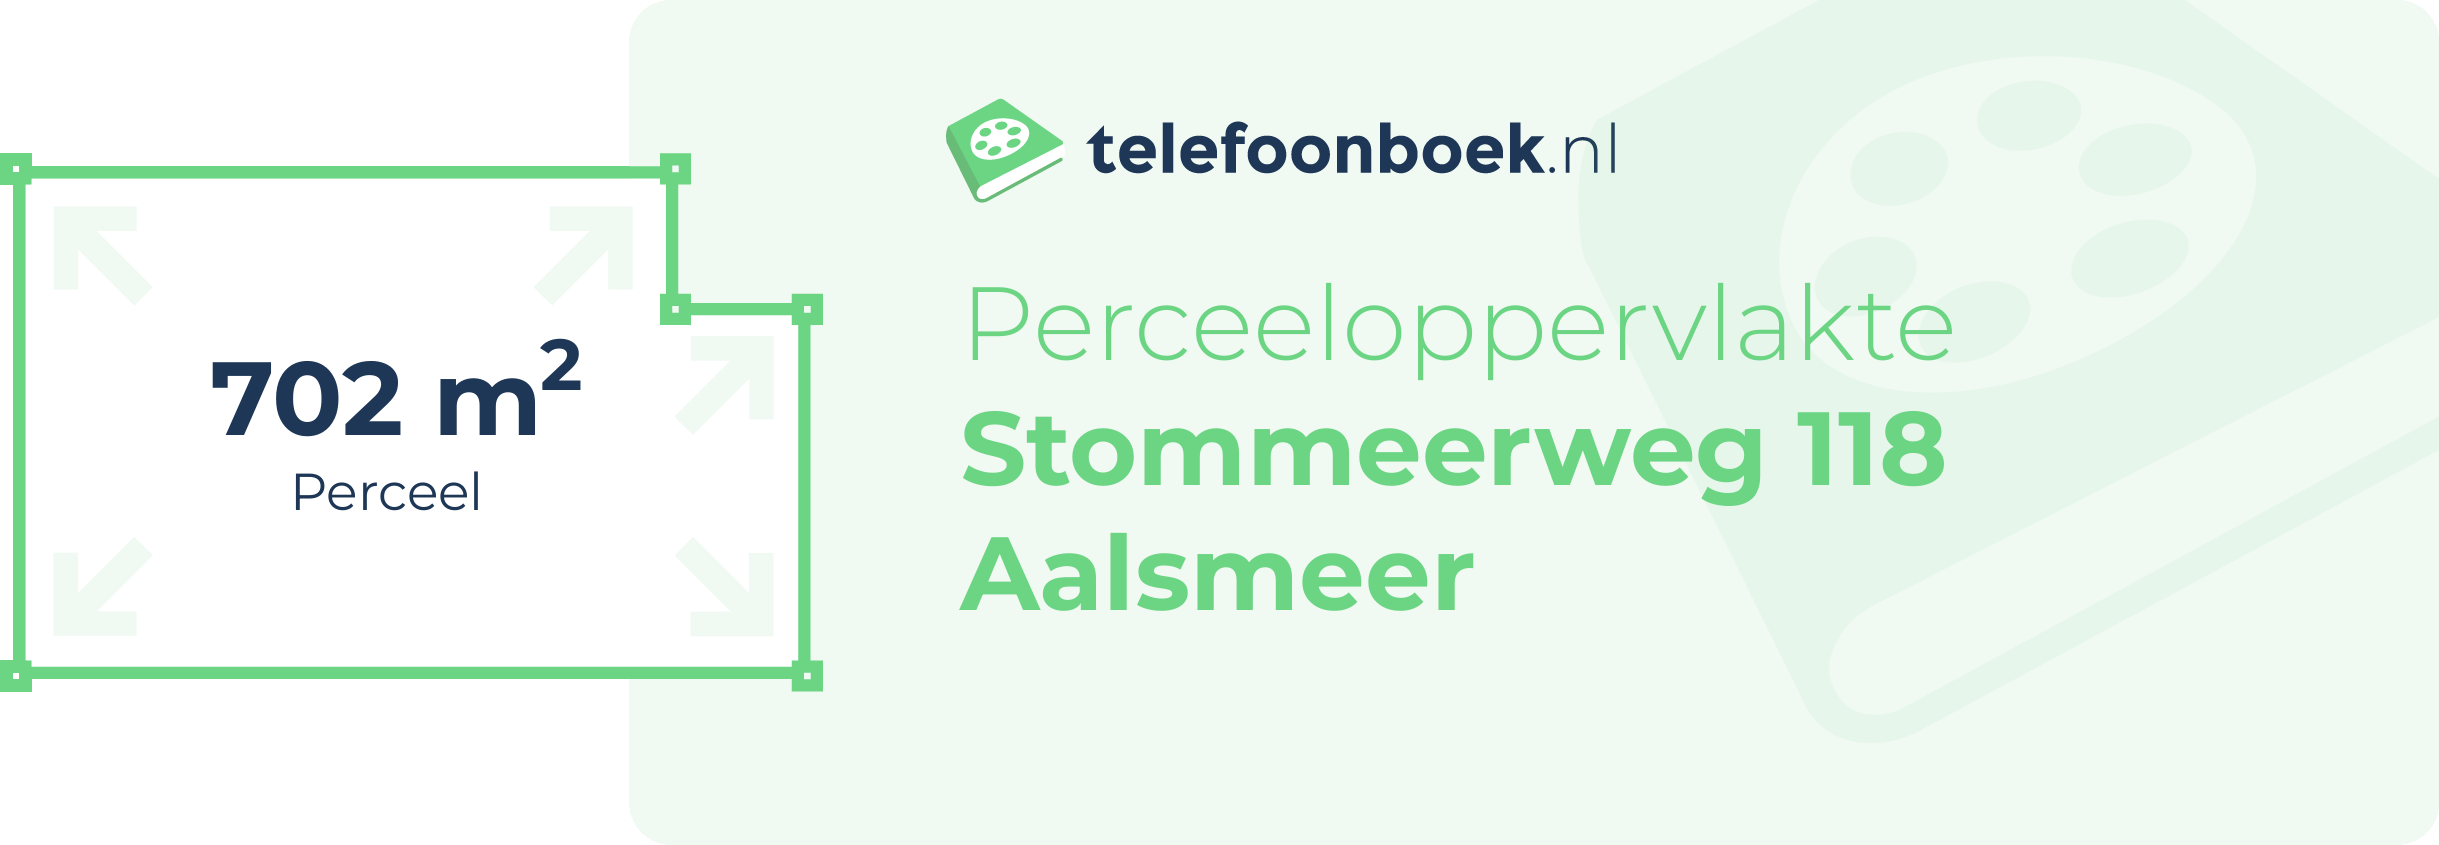 Perceeloppervlakte Stommeerweg 118 Aalsmeer